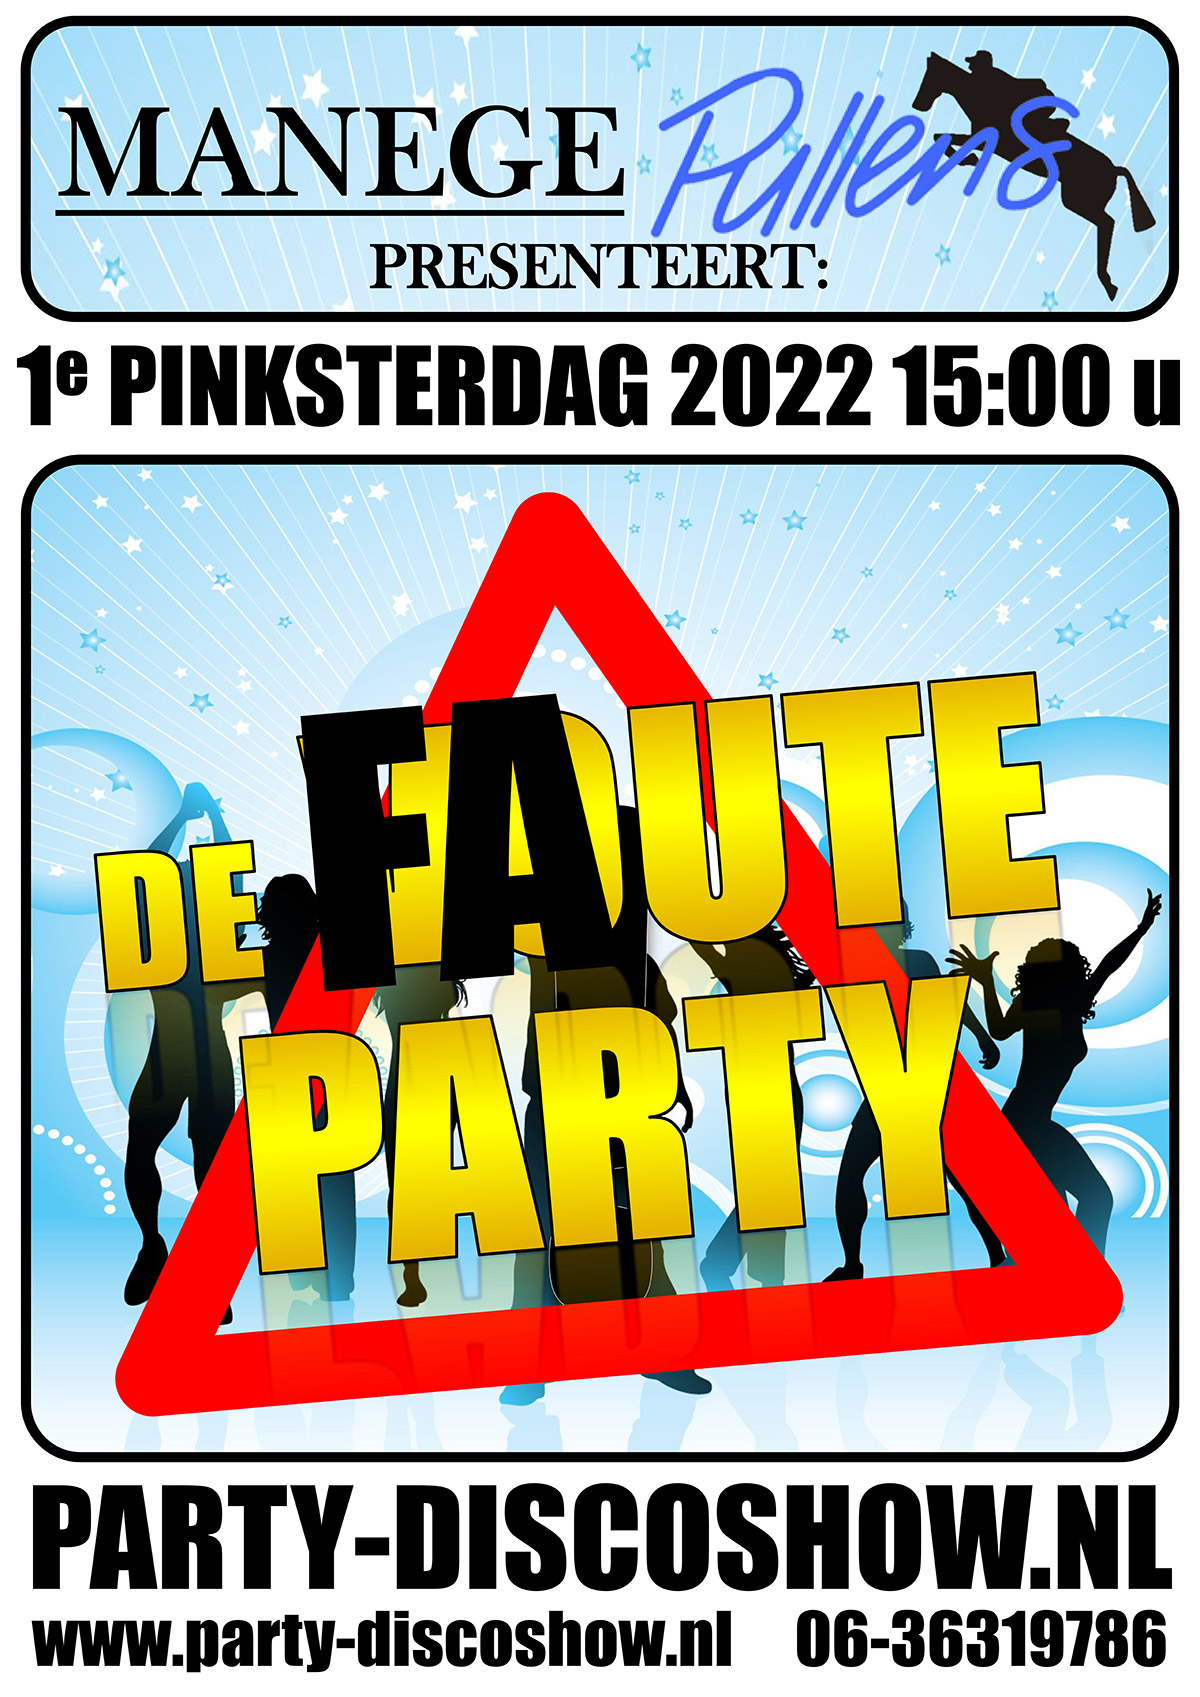 Faute Party 2022